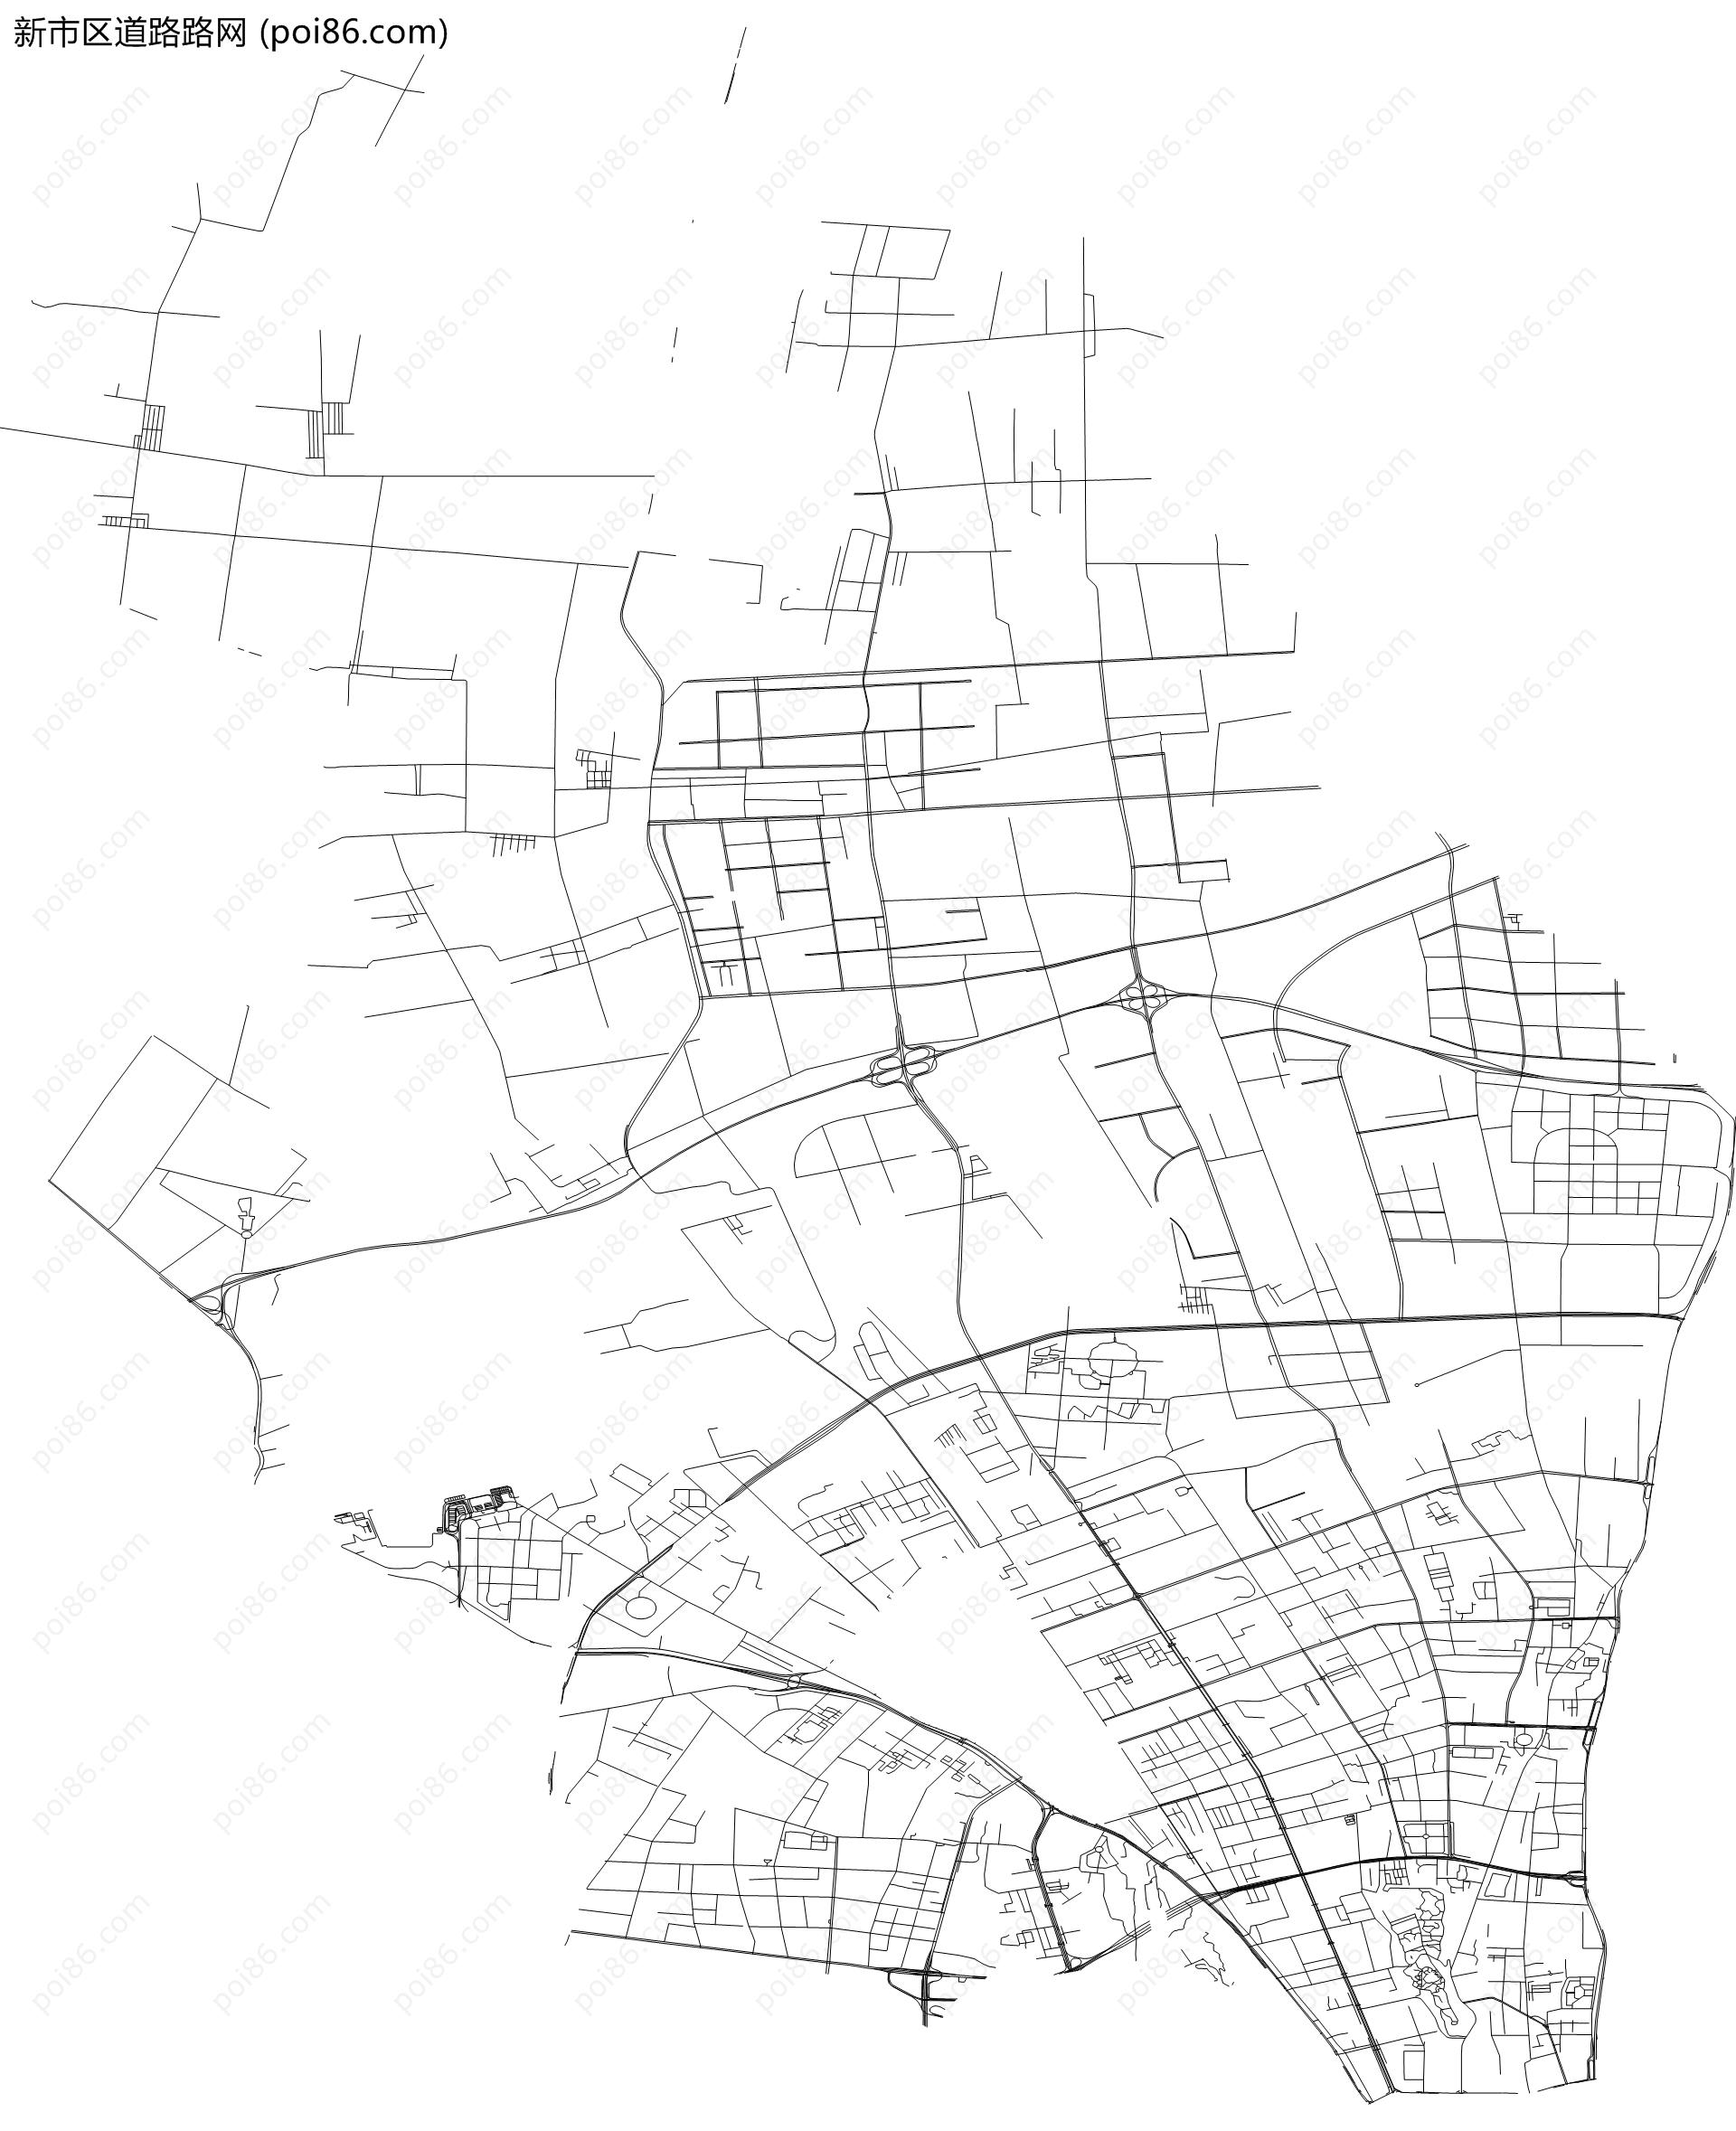 新市区道路路网地图